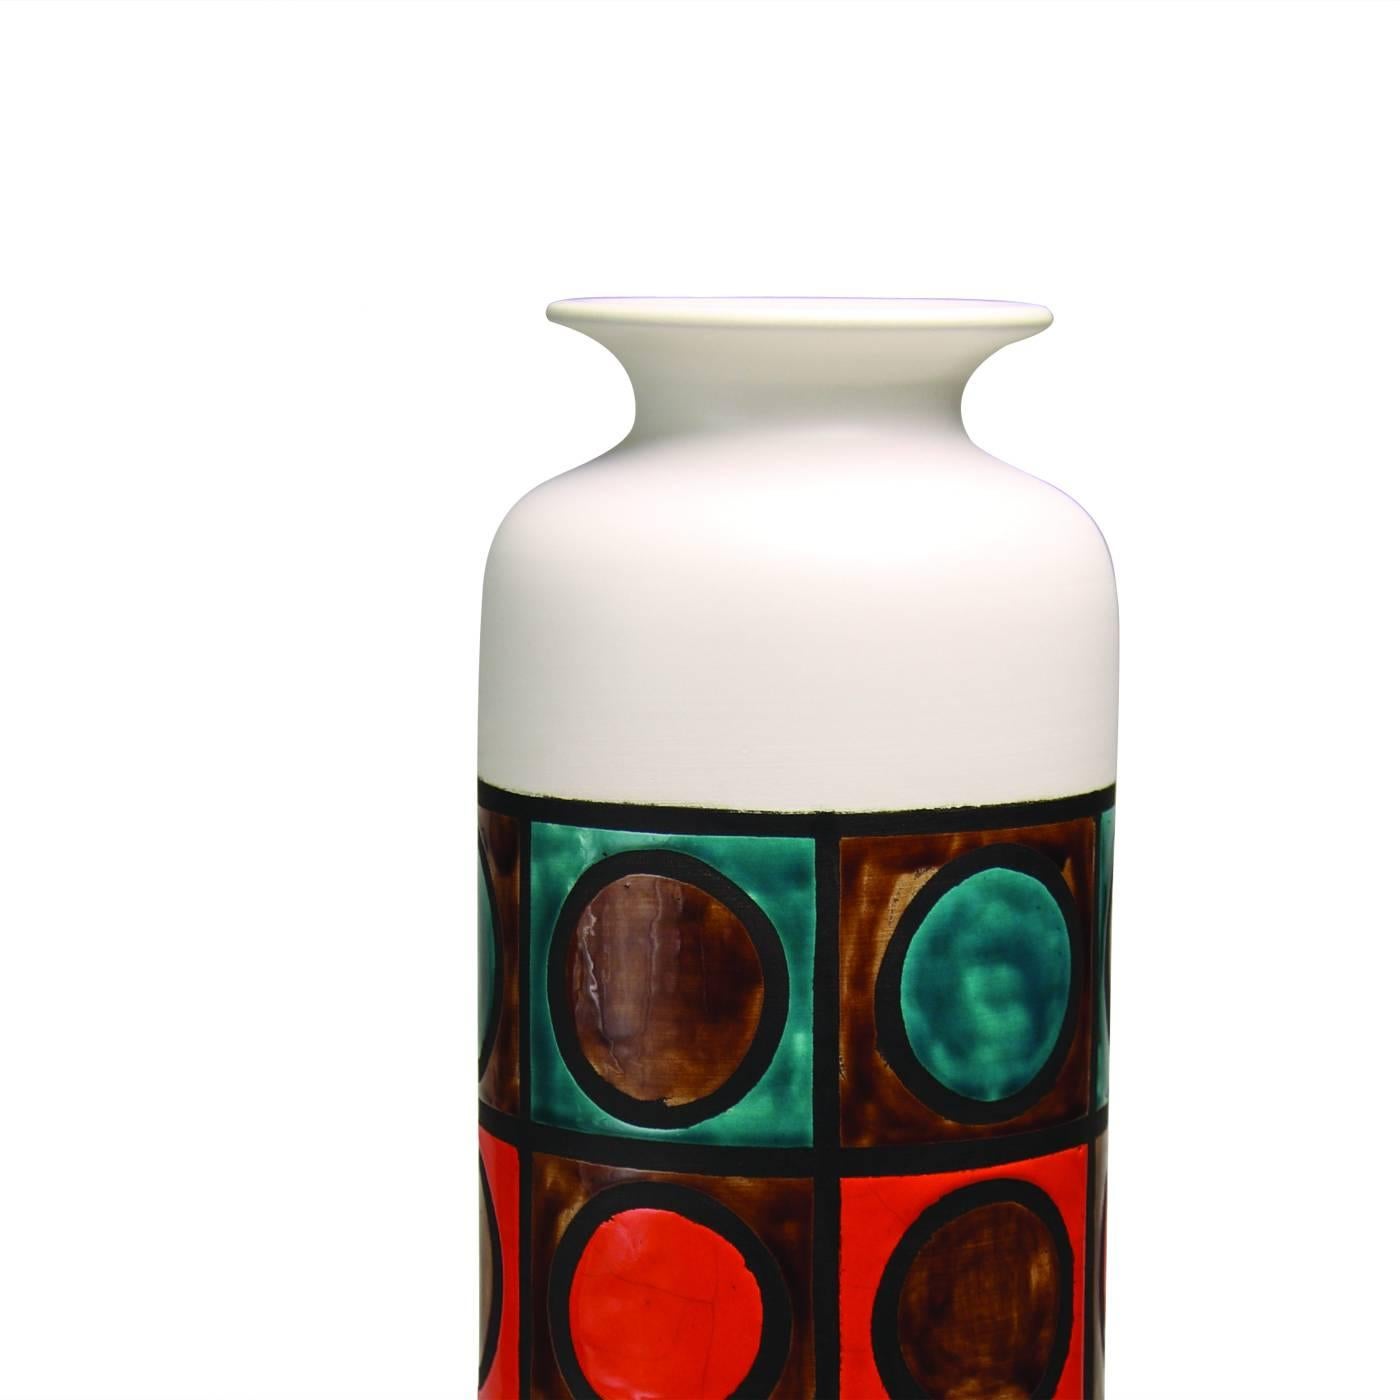 Diese auffällige Vase aus weißem Ton hat eine schlichte zylindrische Form mit weißer Oberfläche und einem zentralen Bereich, der mit einer Reihe von mehrfarbigen Ringen verziert ist, die von Quadraten umgeben sind, die jeweils einen dunklen Rand